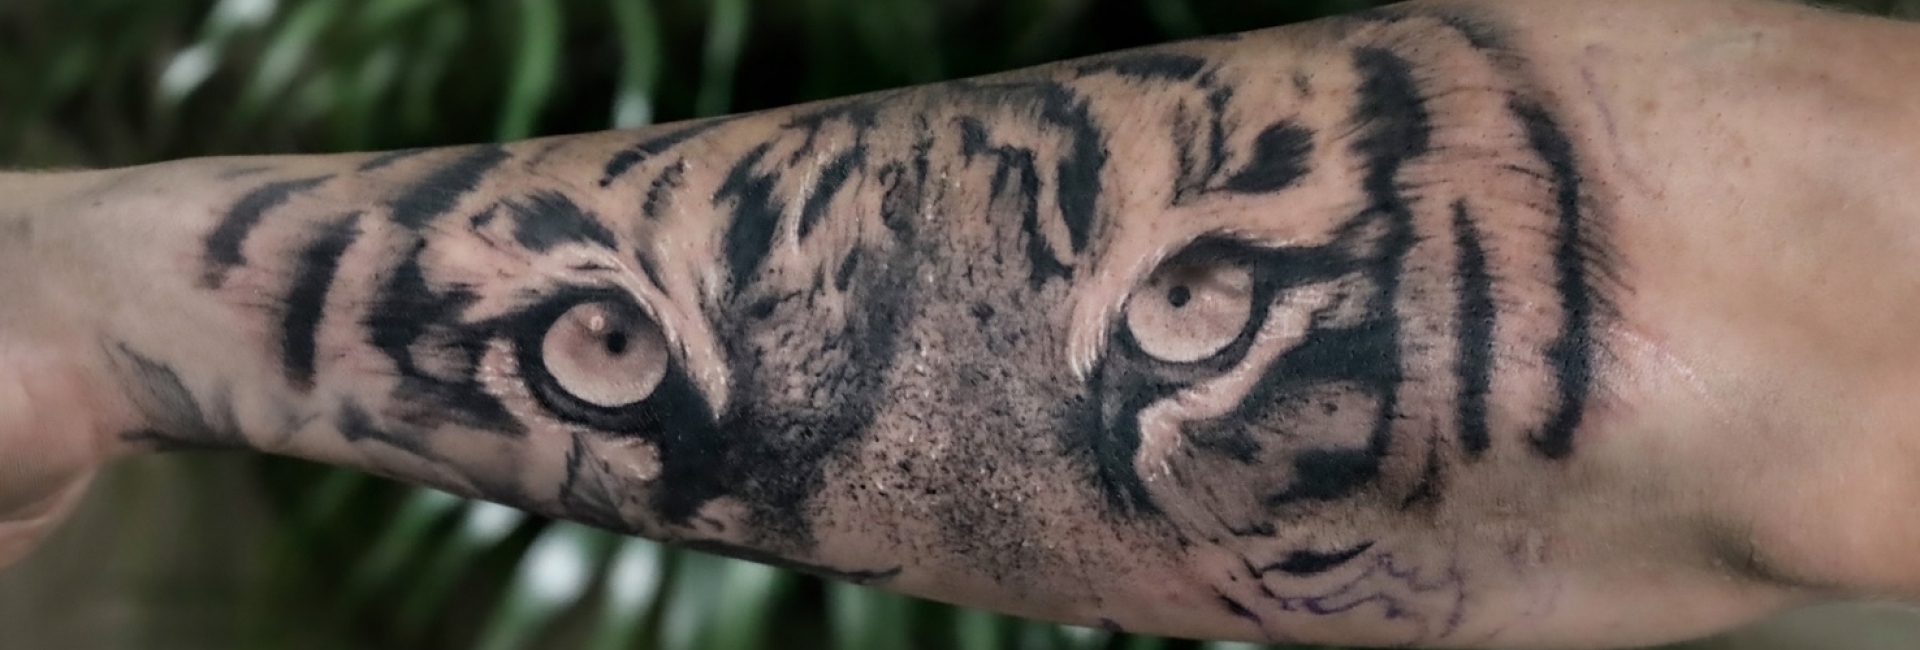 Vitruvian Tattoo Genk Tiger